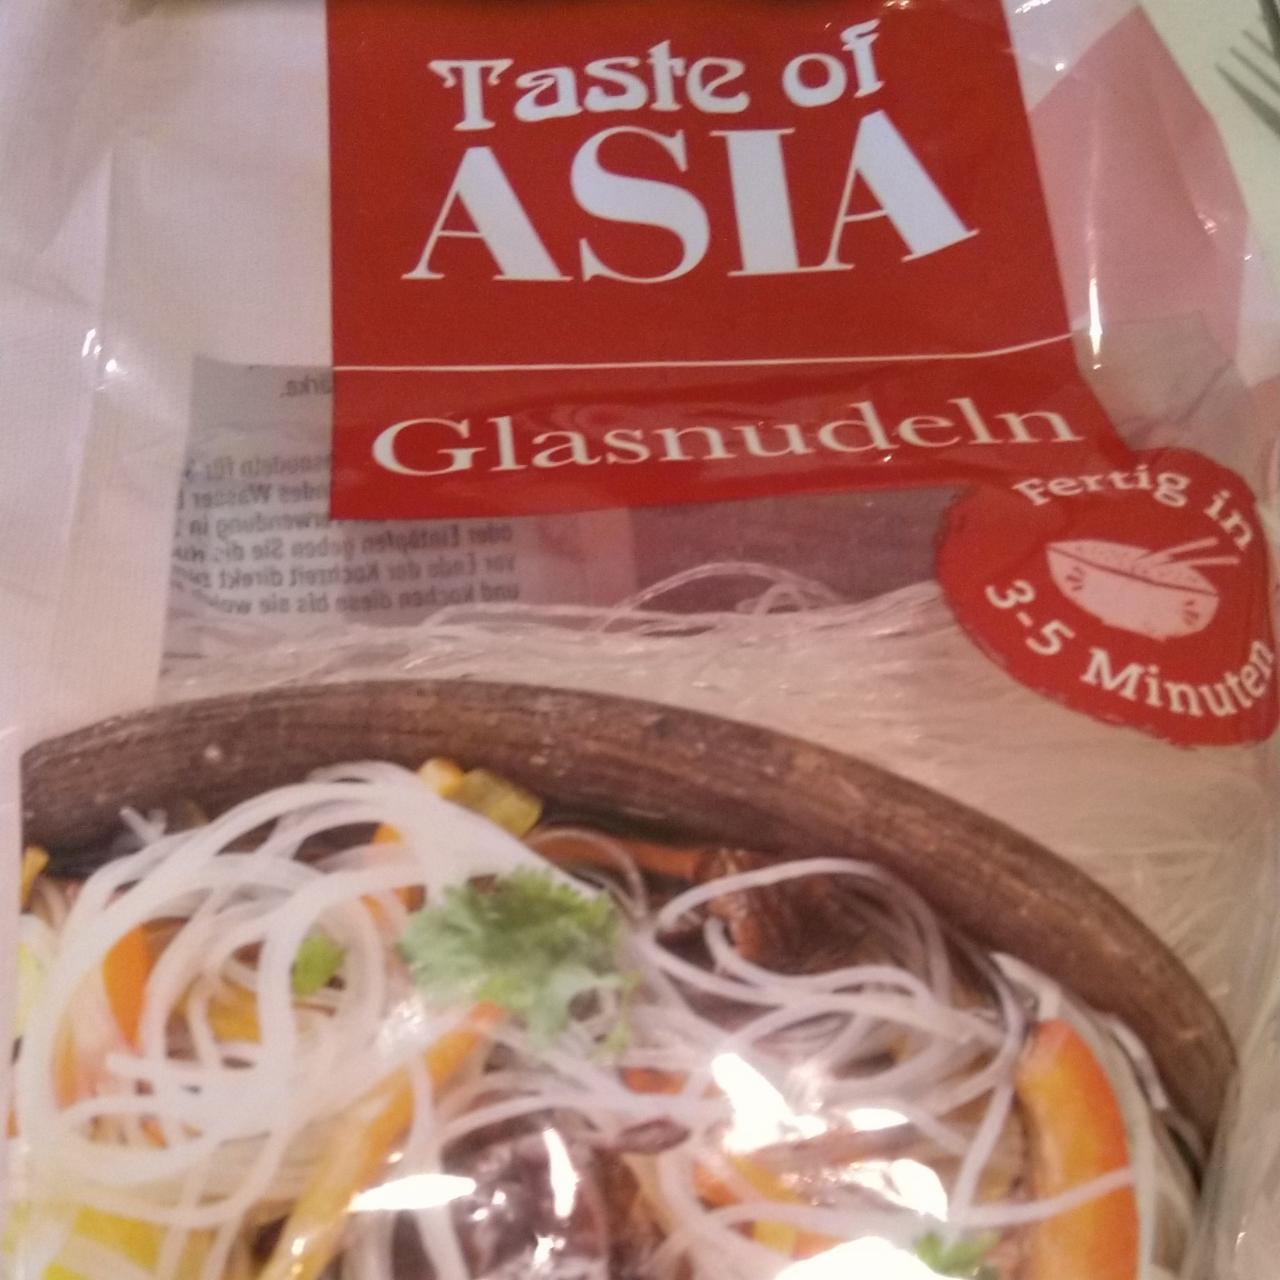 Fotografie - Glasnudeln Taste of Asia